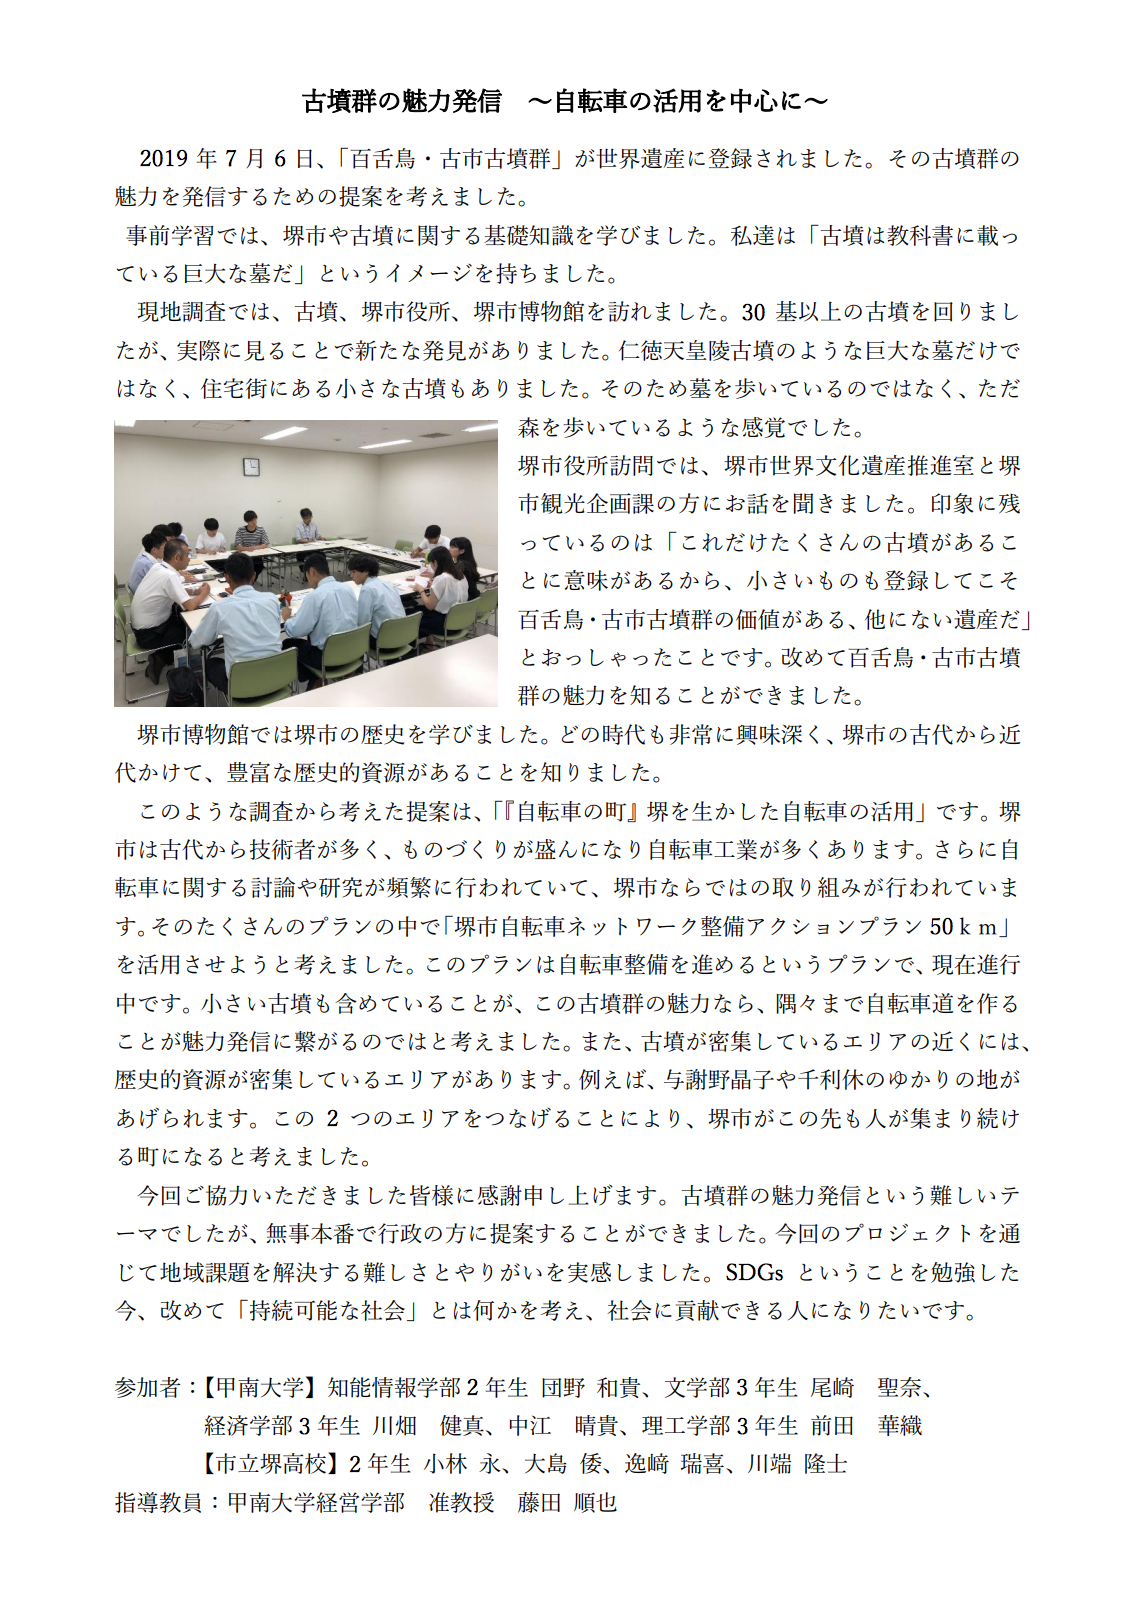 徳島「SDGs徳島チームの取り組み ～南海トラフ地震からどのようにして身を守るか」